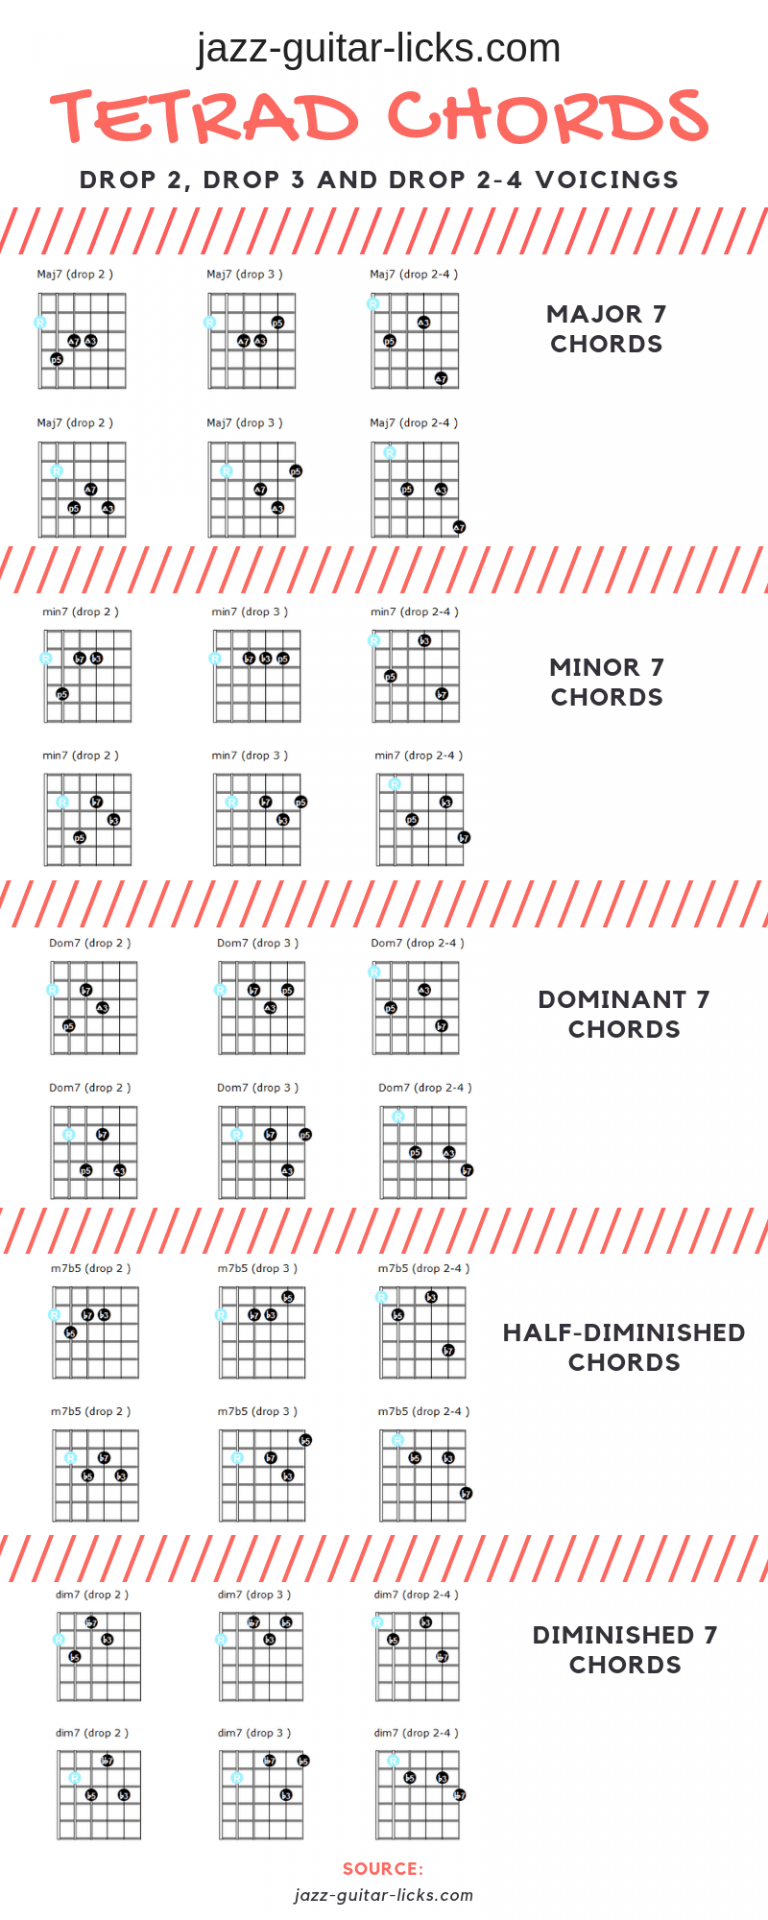 Tetrad chords for guitar - Drop 2, Drop 3, Drop 2-4 voicings